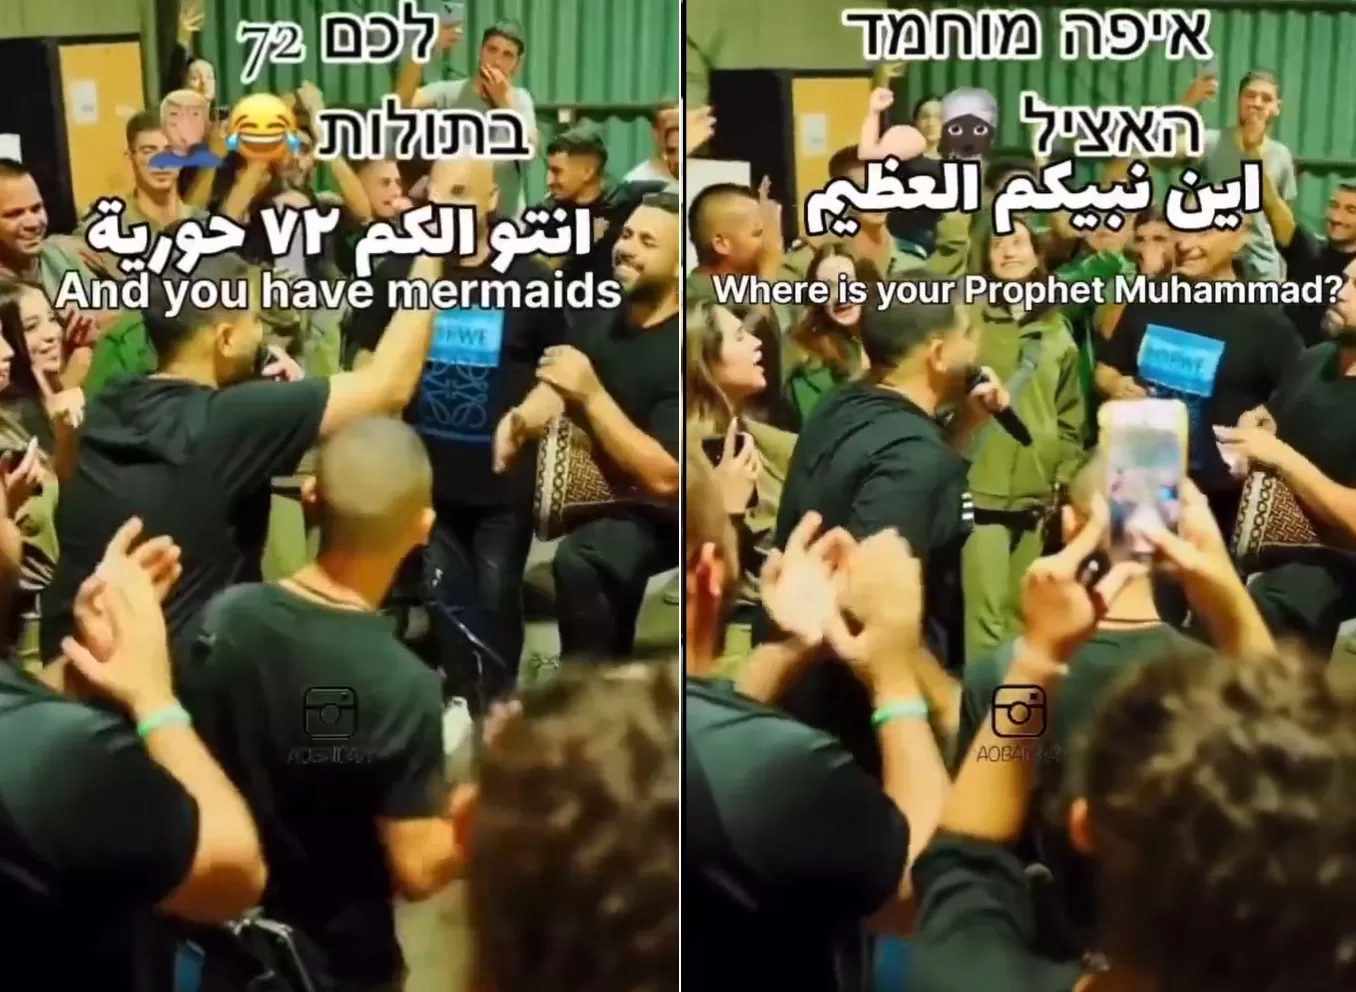 جنود إسرائيليون يسخرون من الإسلام